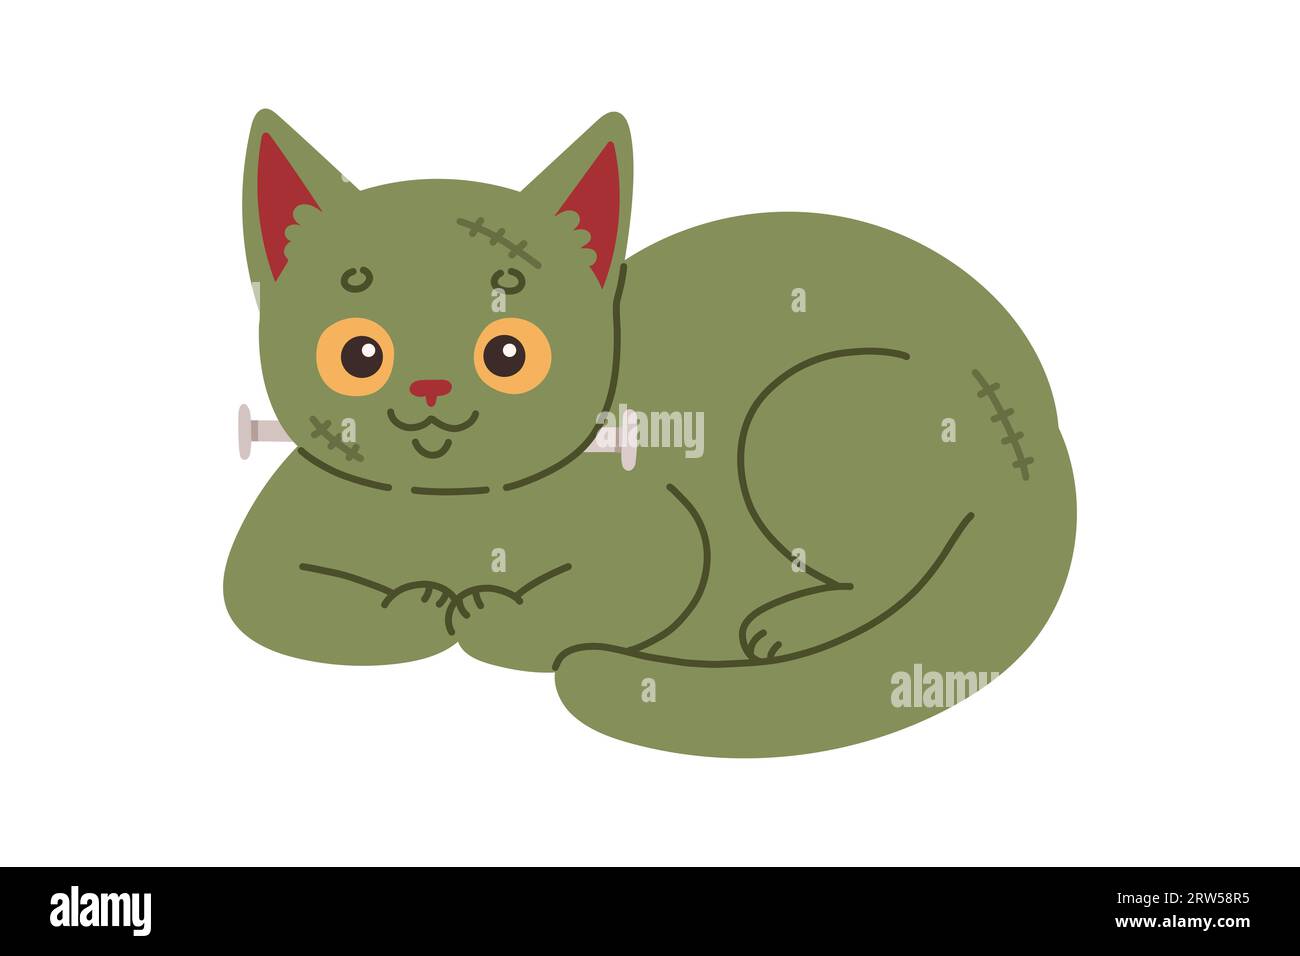 Halloween-Katze. Grünes Kätzchen im frankensteinkostüm. Happy halloween Kostüm Illustration. Stock Vektor